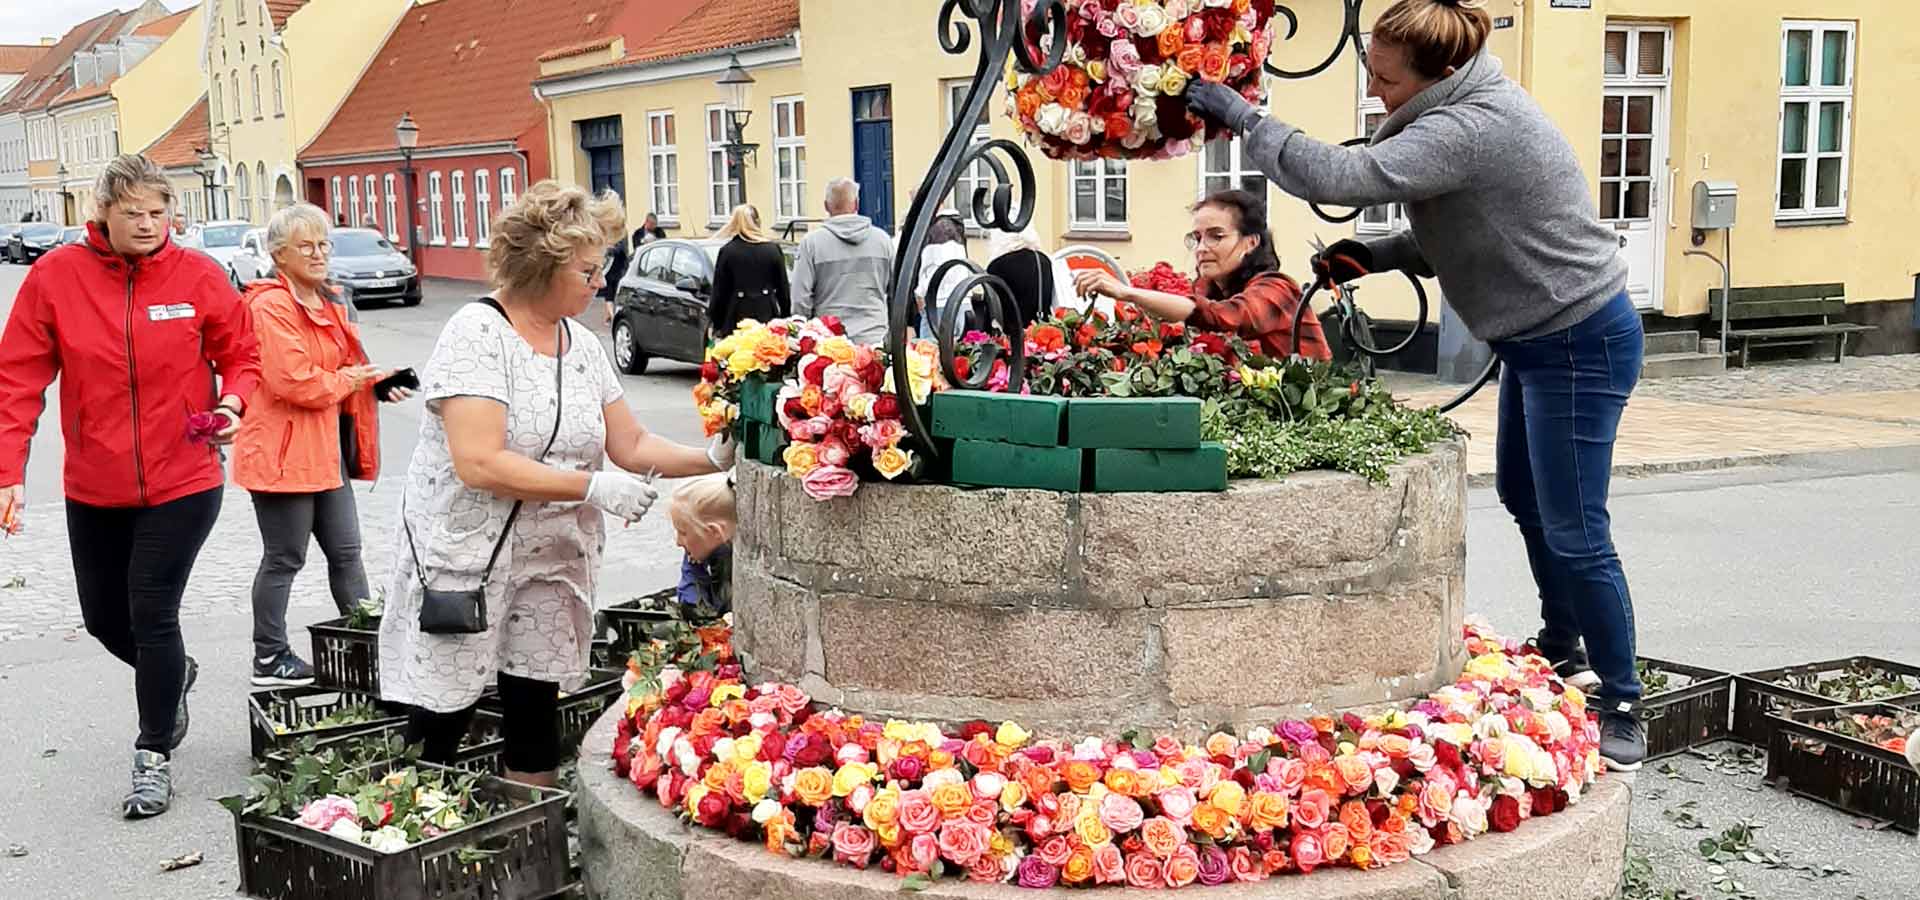 Hvert år er der mange frivillige hjælpere til at udsmykke byen med roser